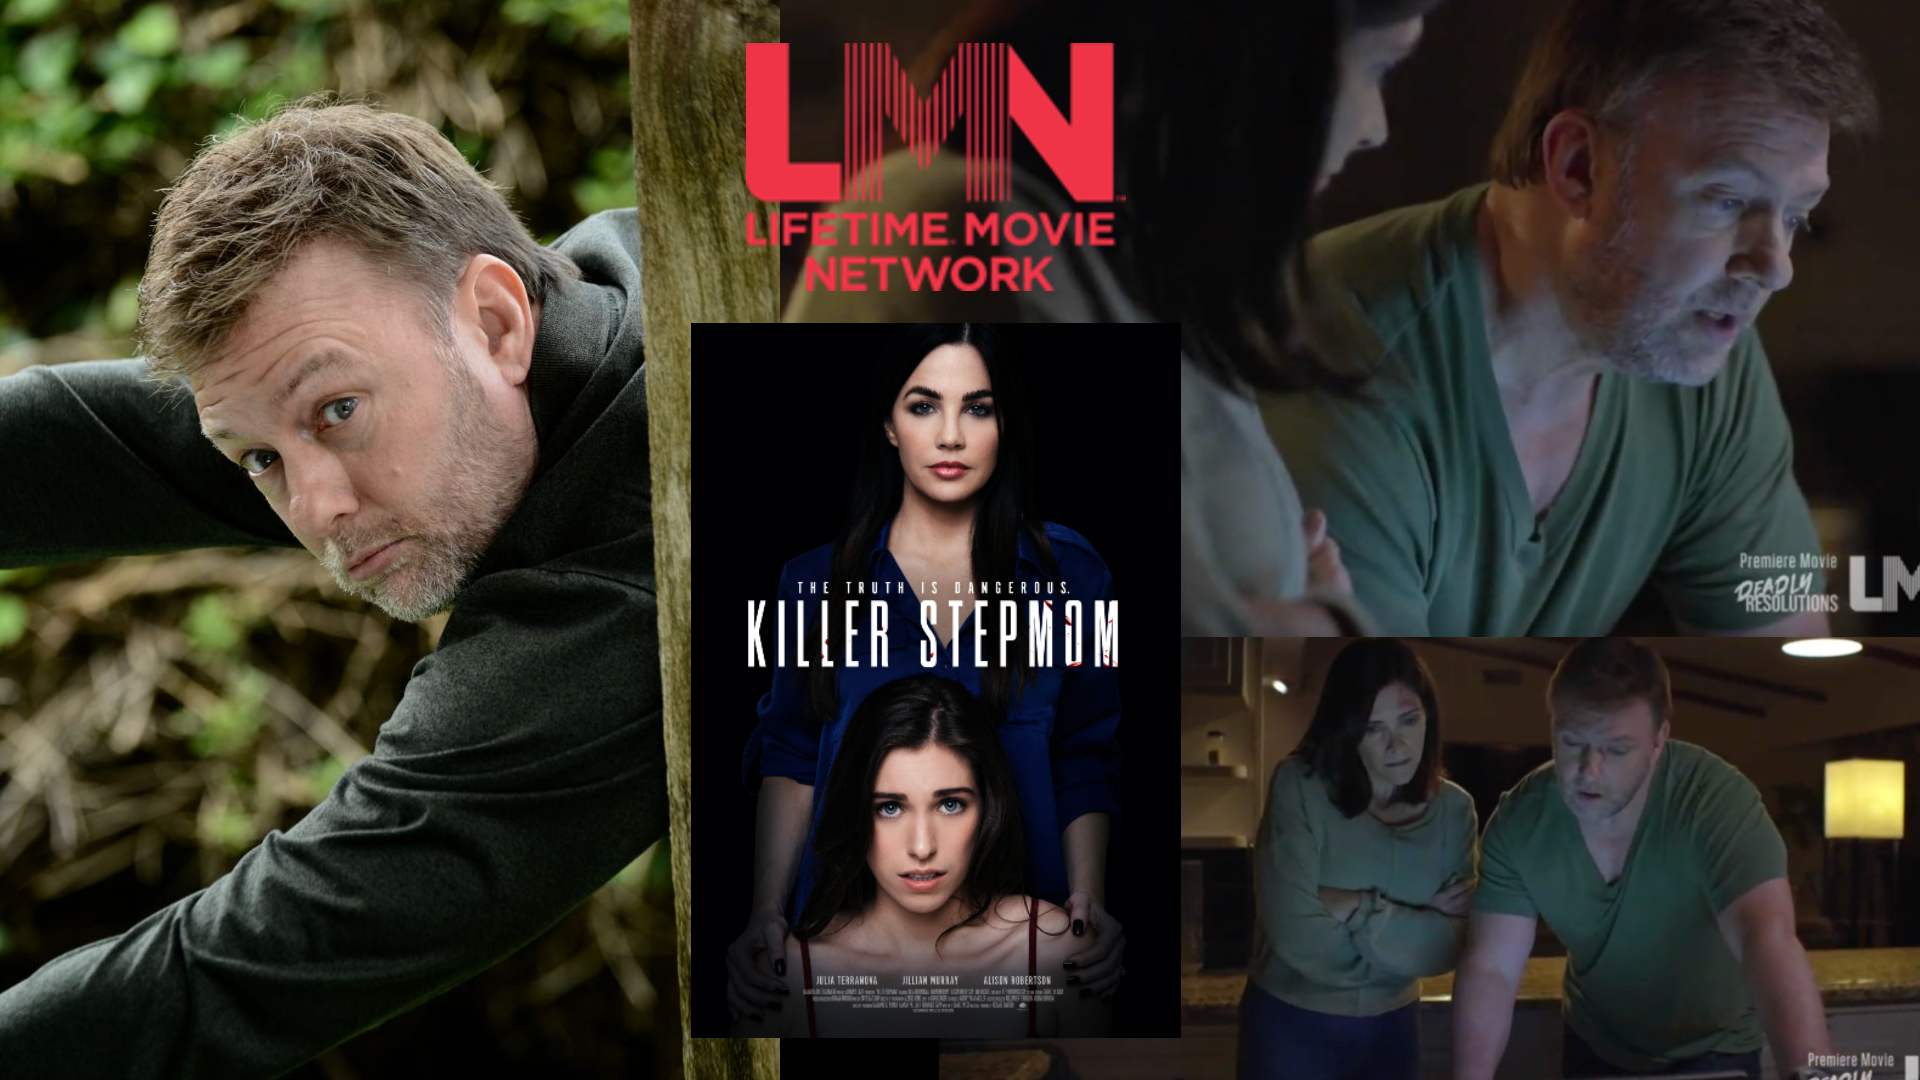 TV-MOVIE NEWS: AMERICAN ACTOR JOHN K. FRAZIER STARRING IN LATEST LMN  “KILLER STEPMOM”  & MORE!